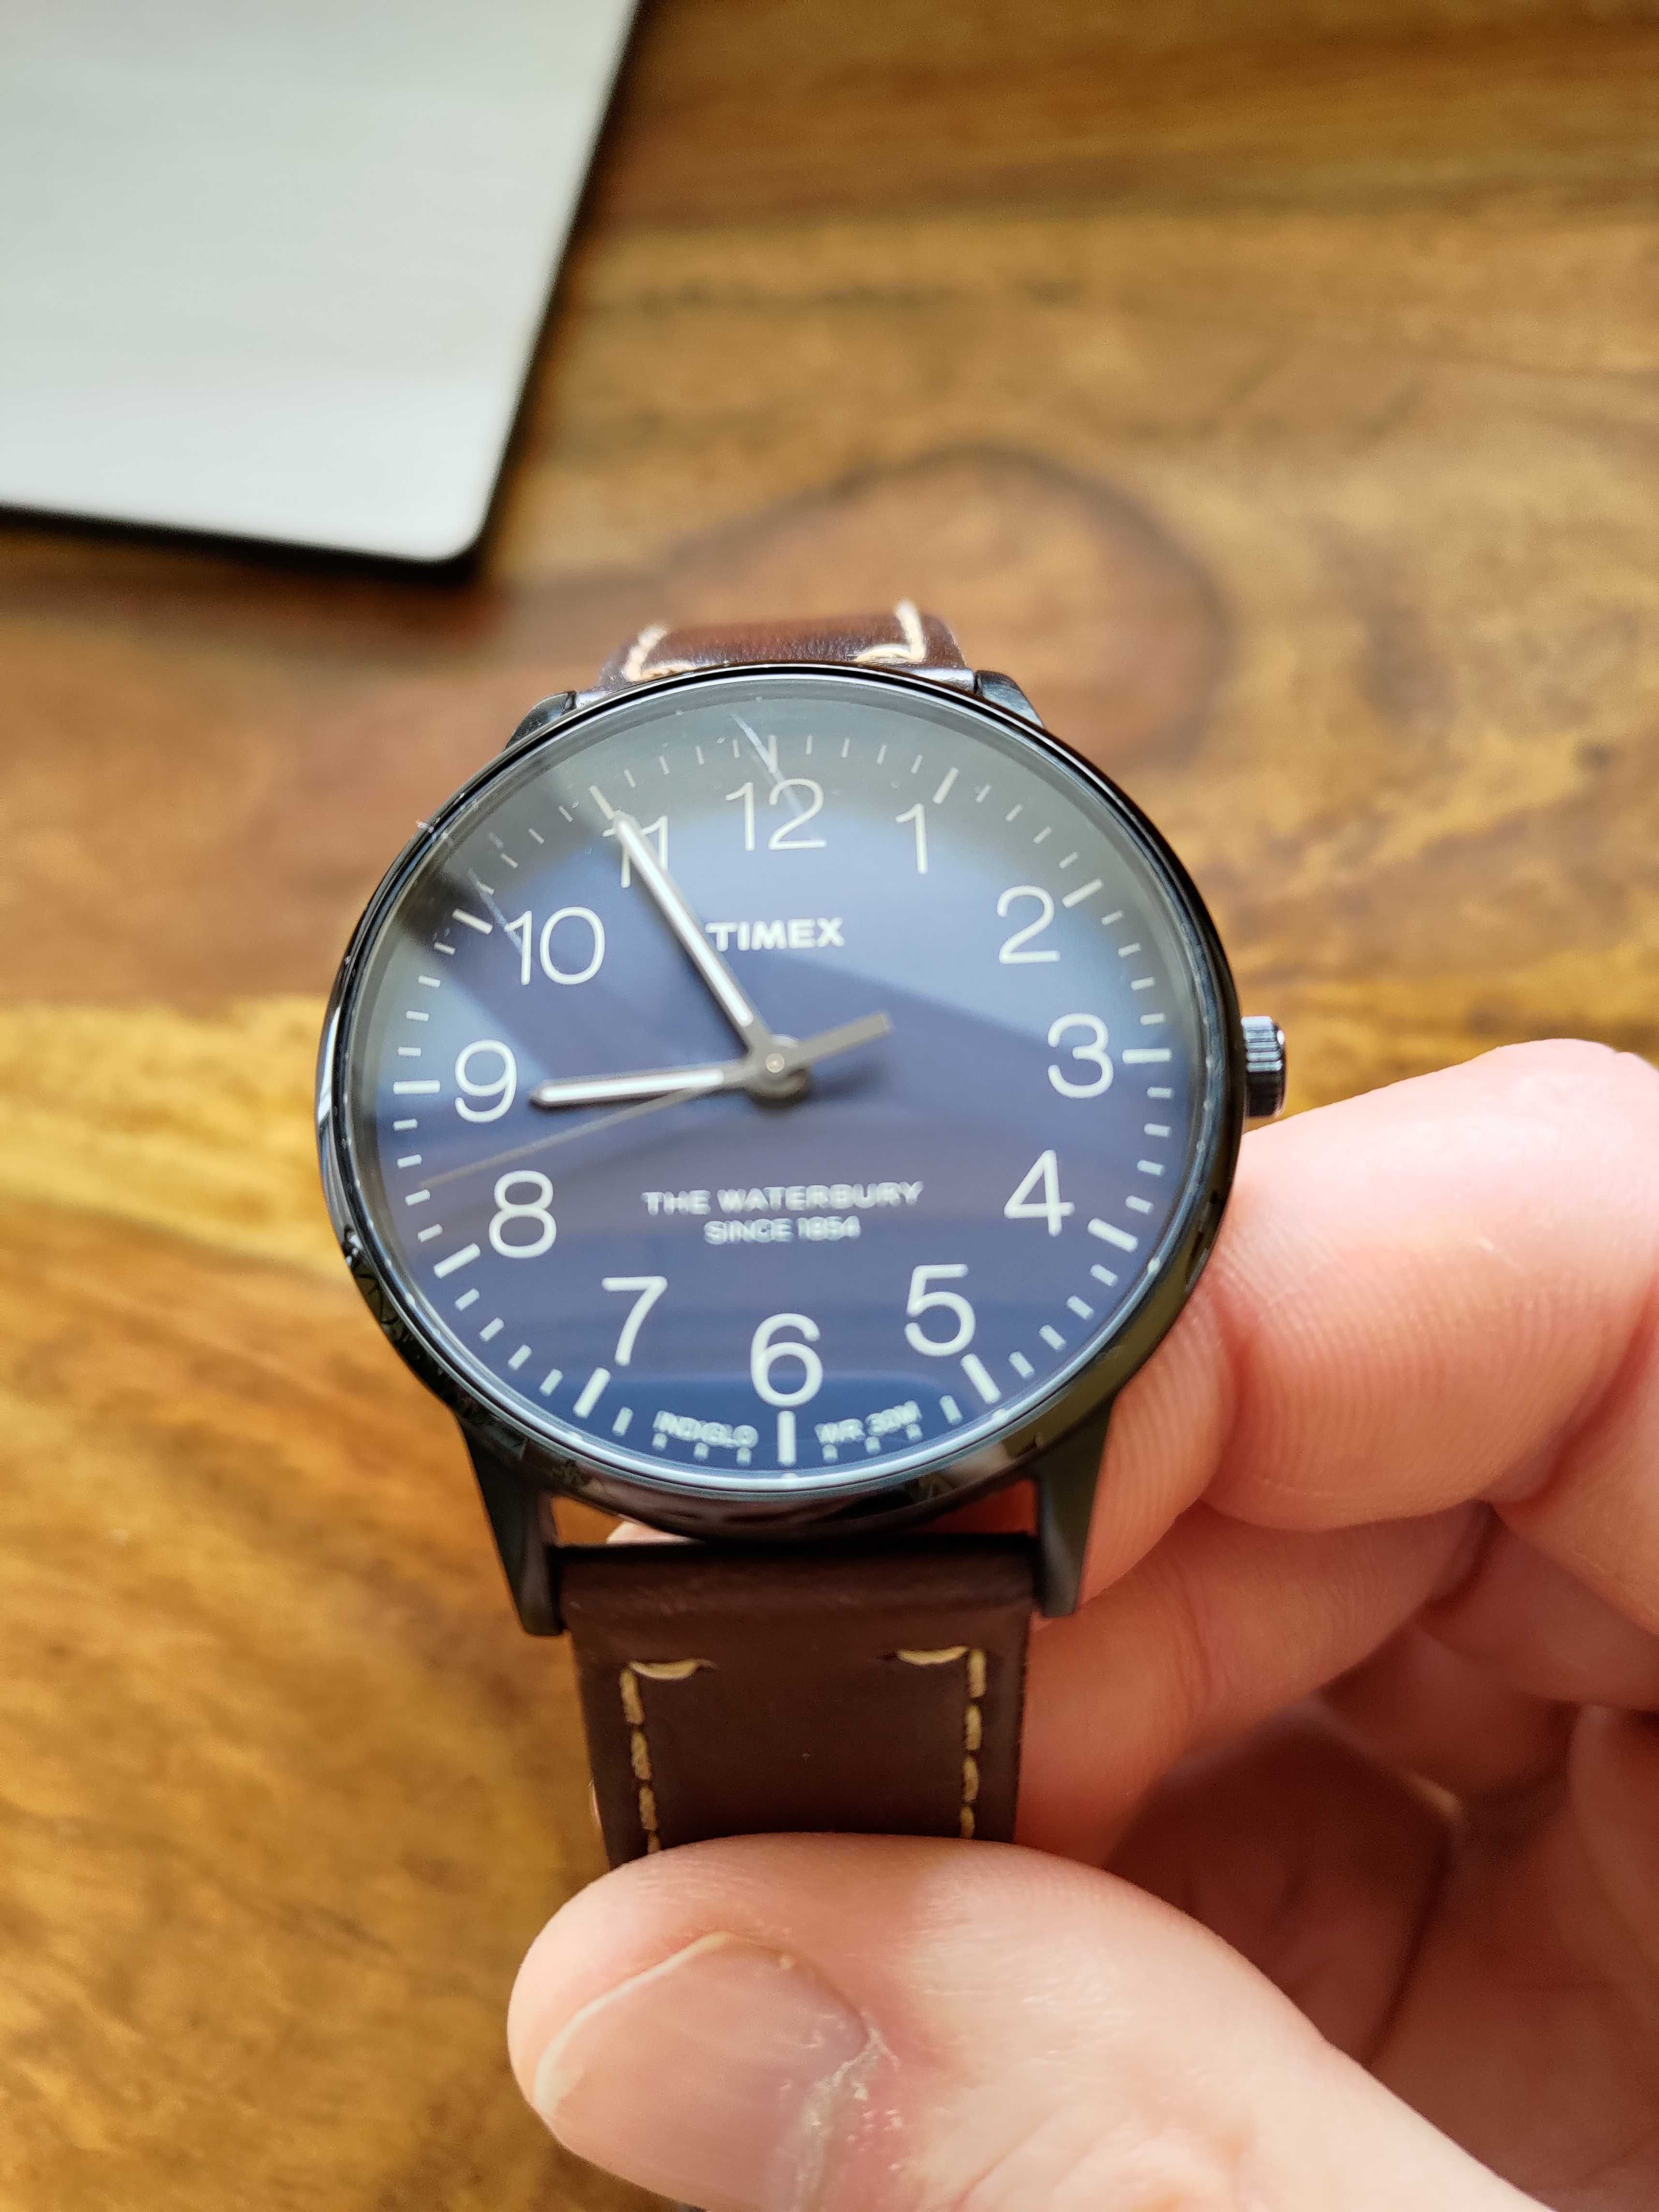 Zegarek Timex używany